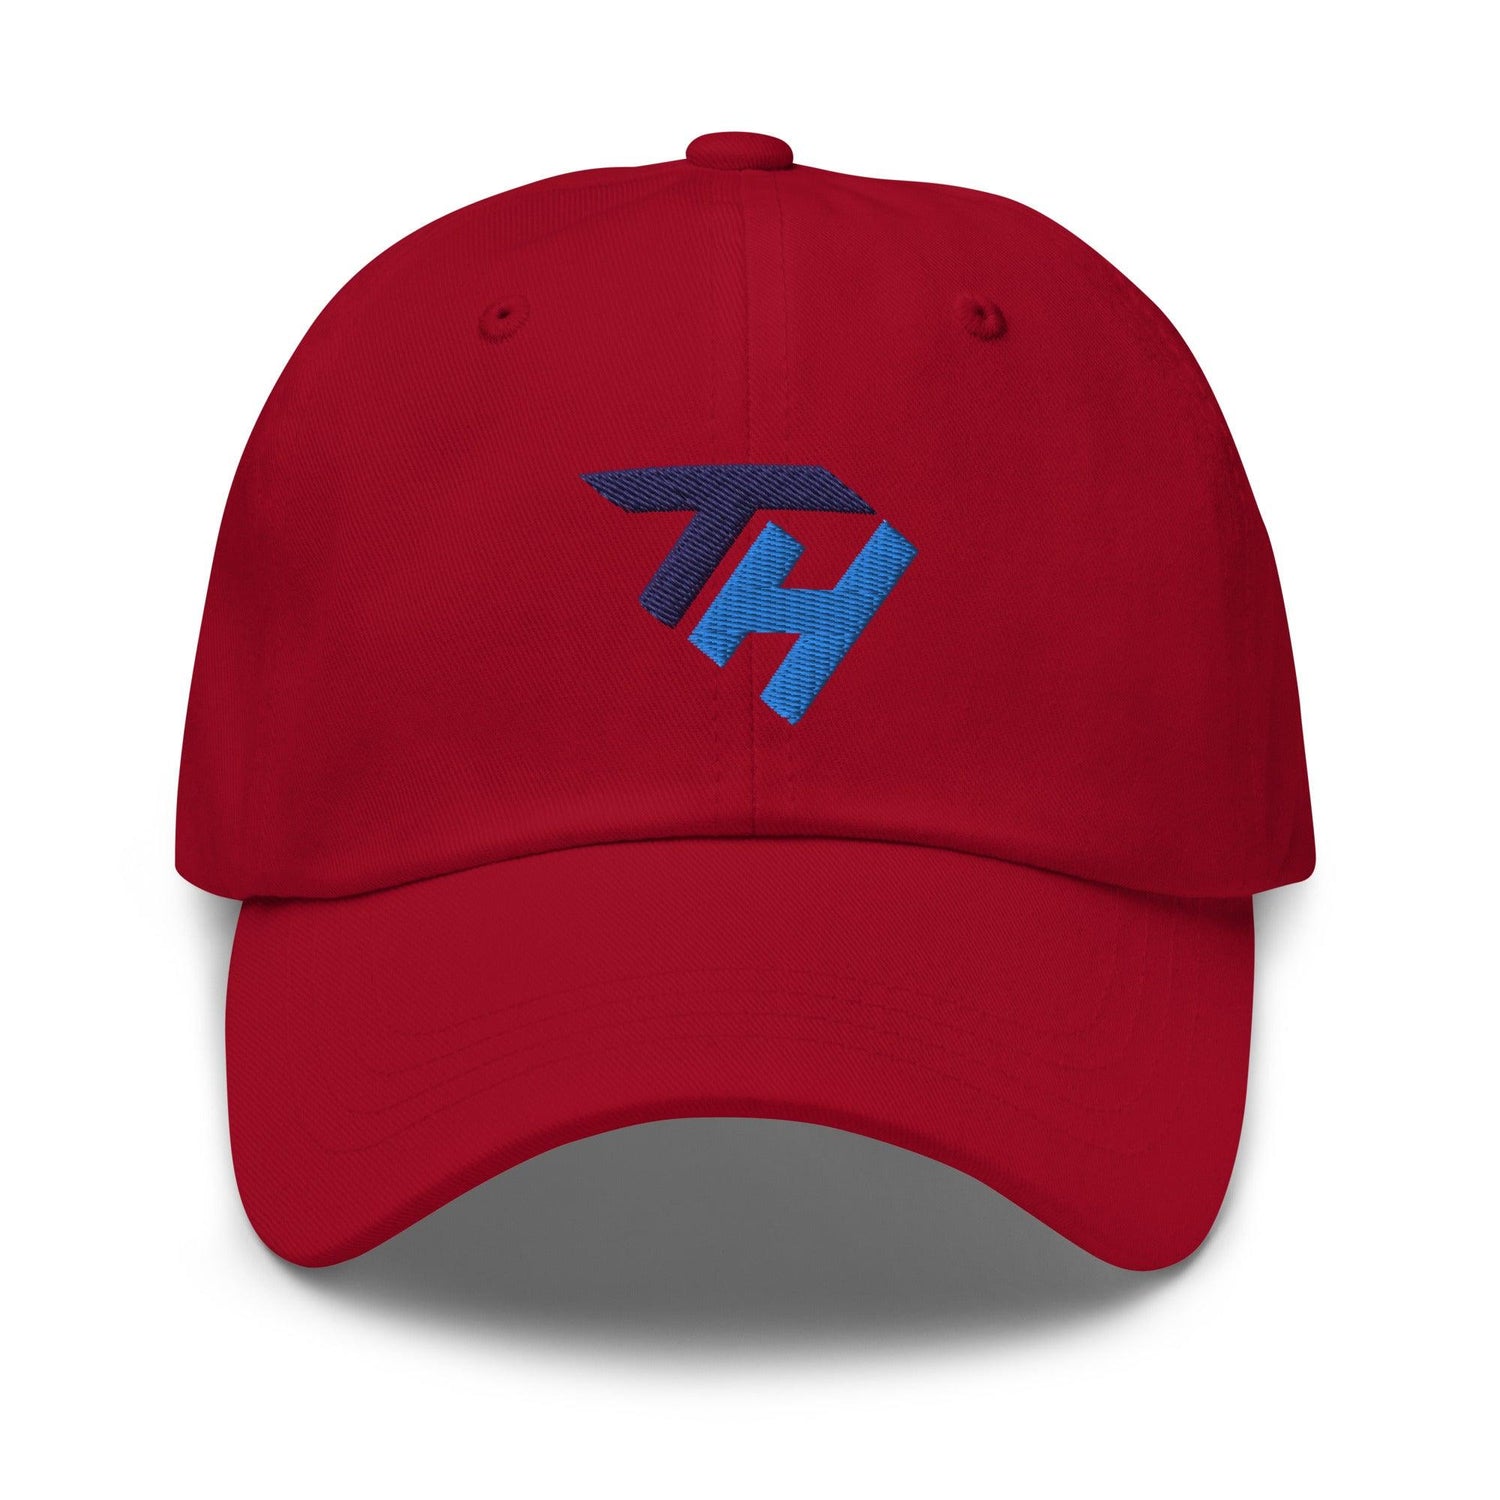 Timmy Herrin "Elite" hat - Fan Arch